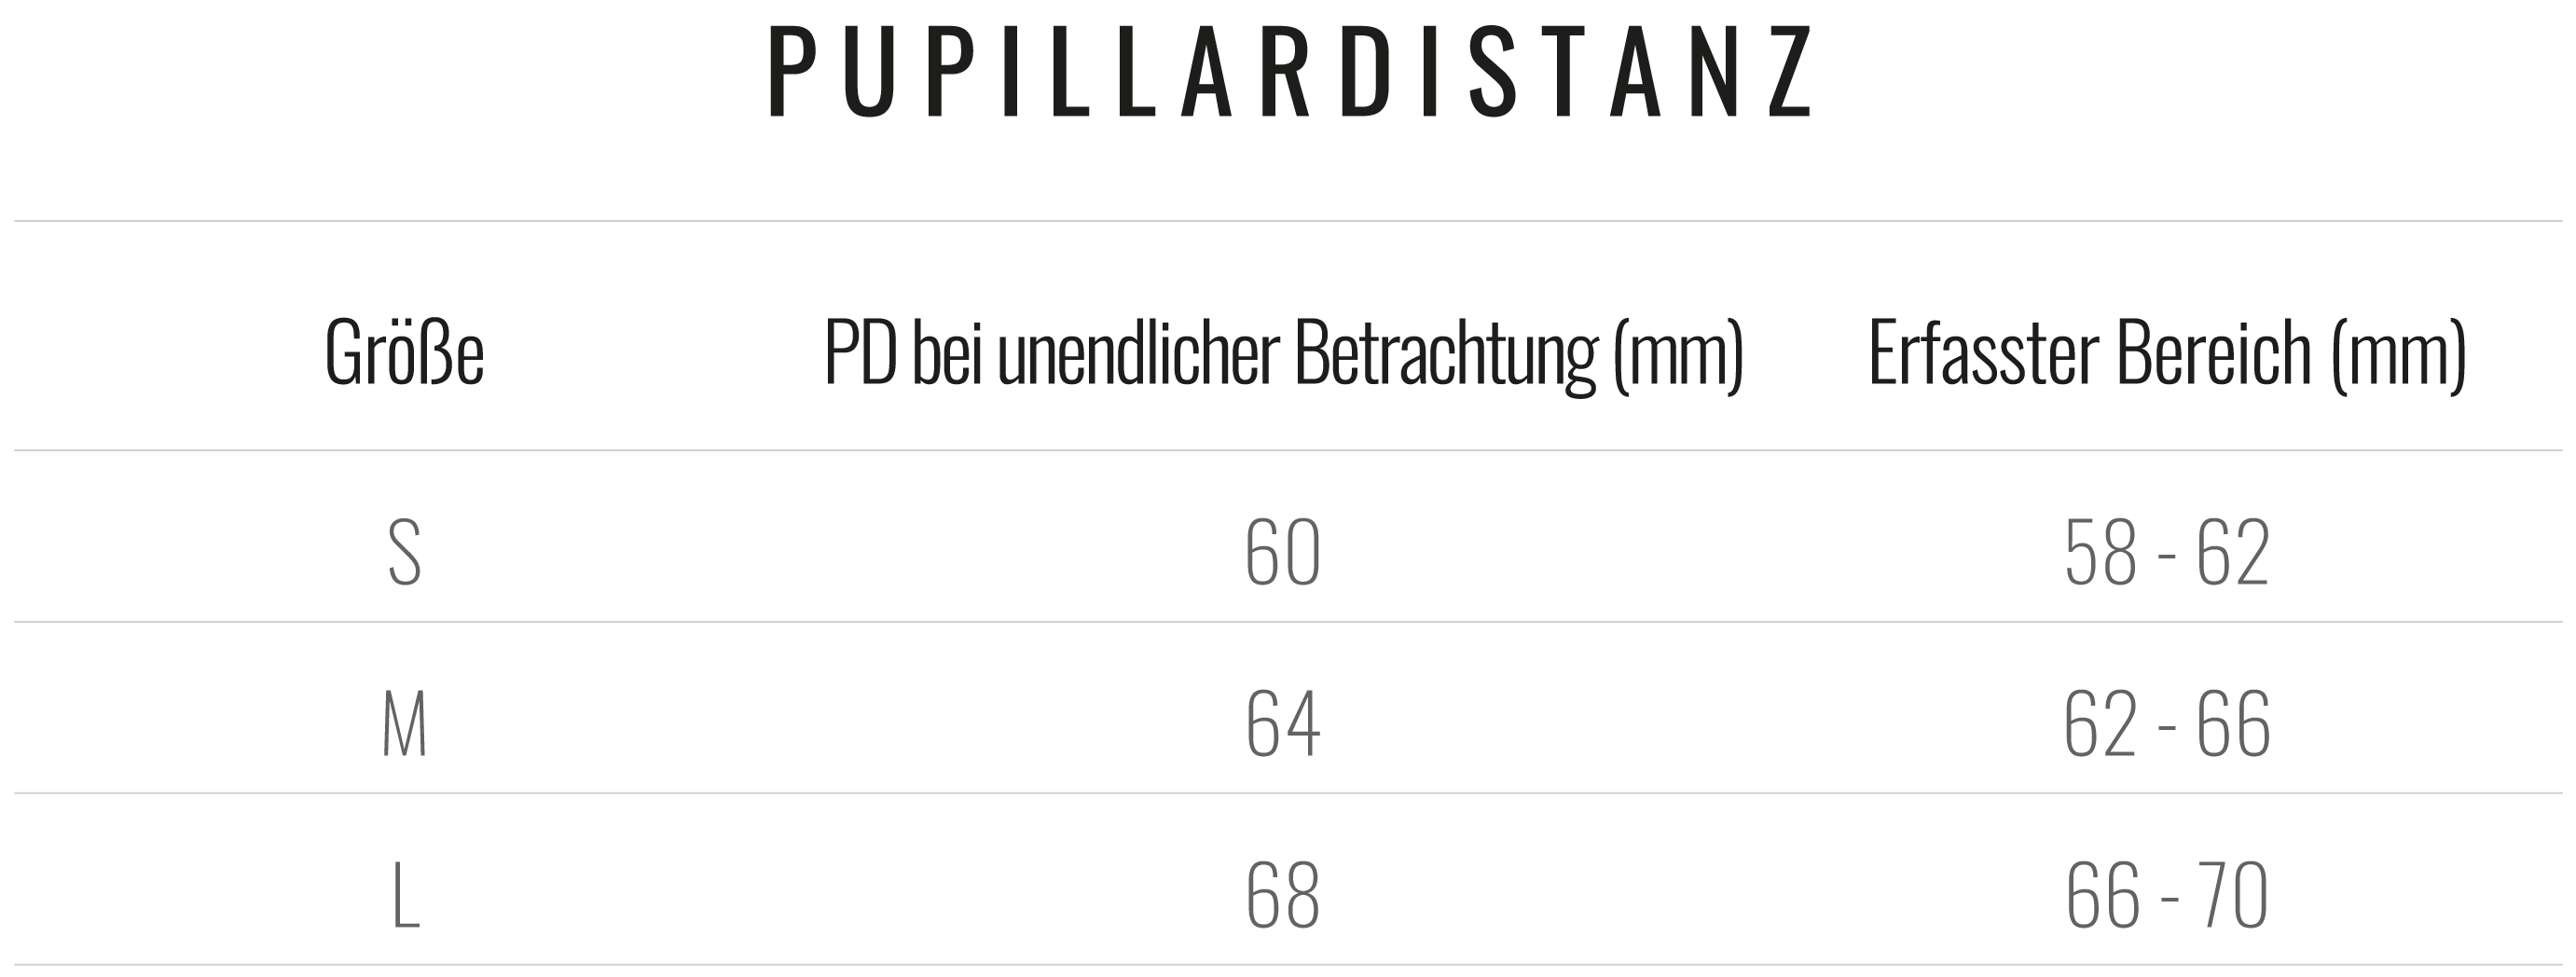 tab_interpupillary-distance_de.png